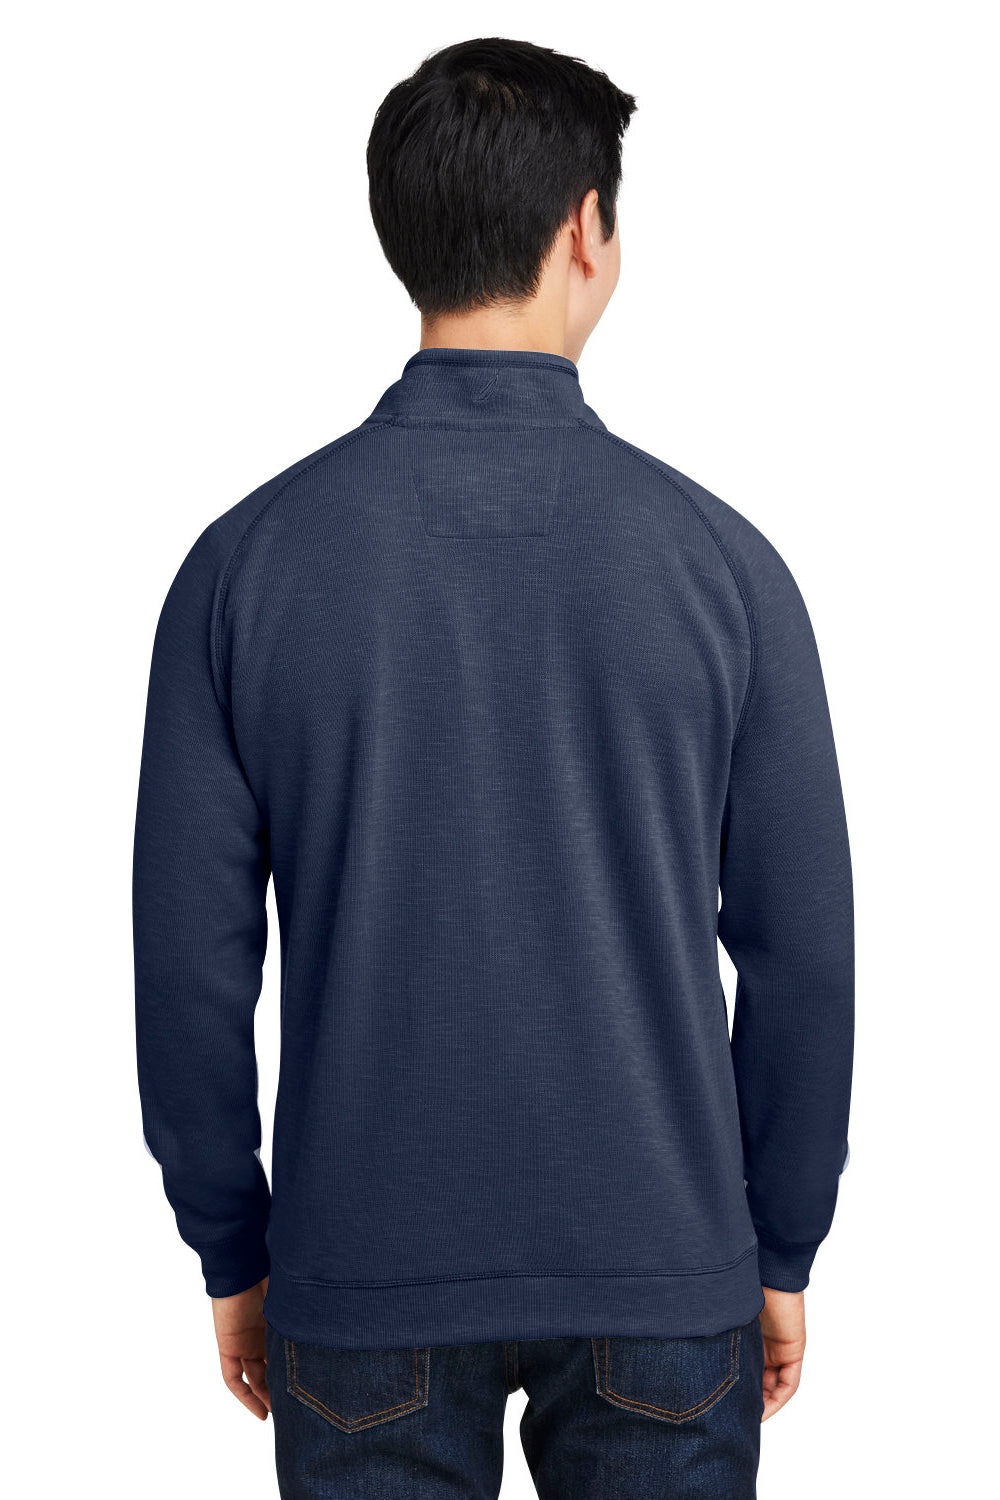 Nautica N17991 Mens Sun Surfer Supreme 1/4 Zip Sweatshirt Vintage Navy Blue Back